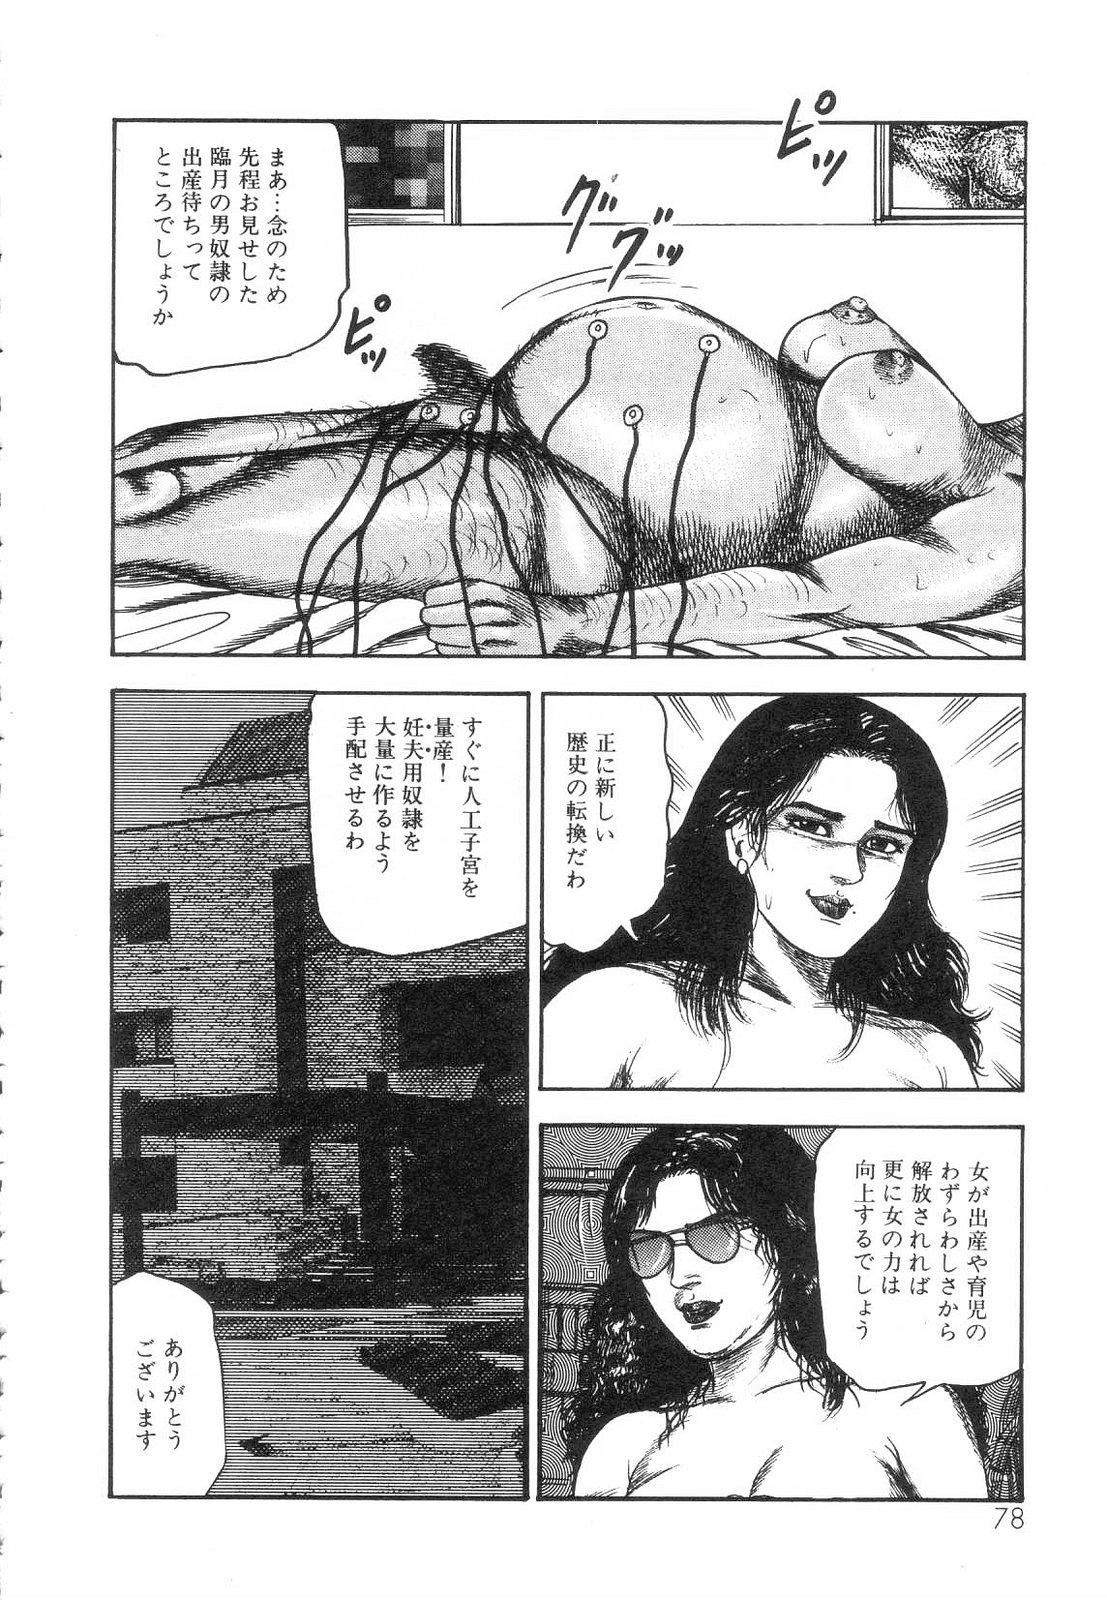 Shiro no Mokushiroku Vol. 5 - Ninshoujo Erika no Shou 79